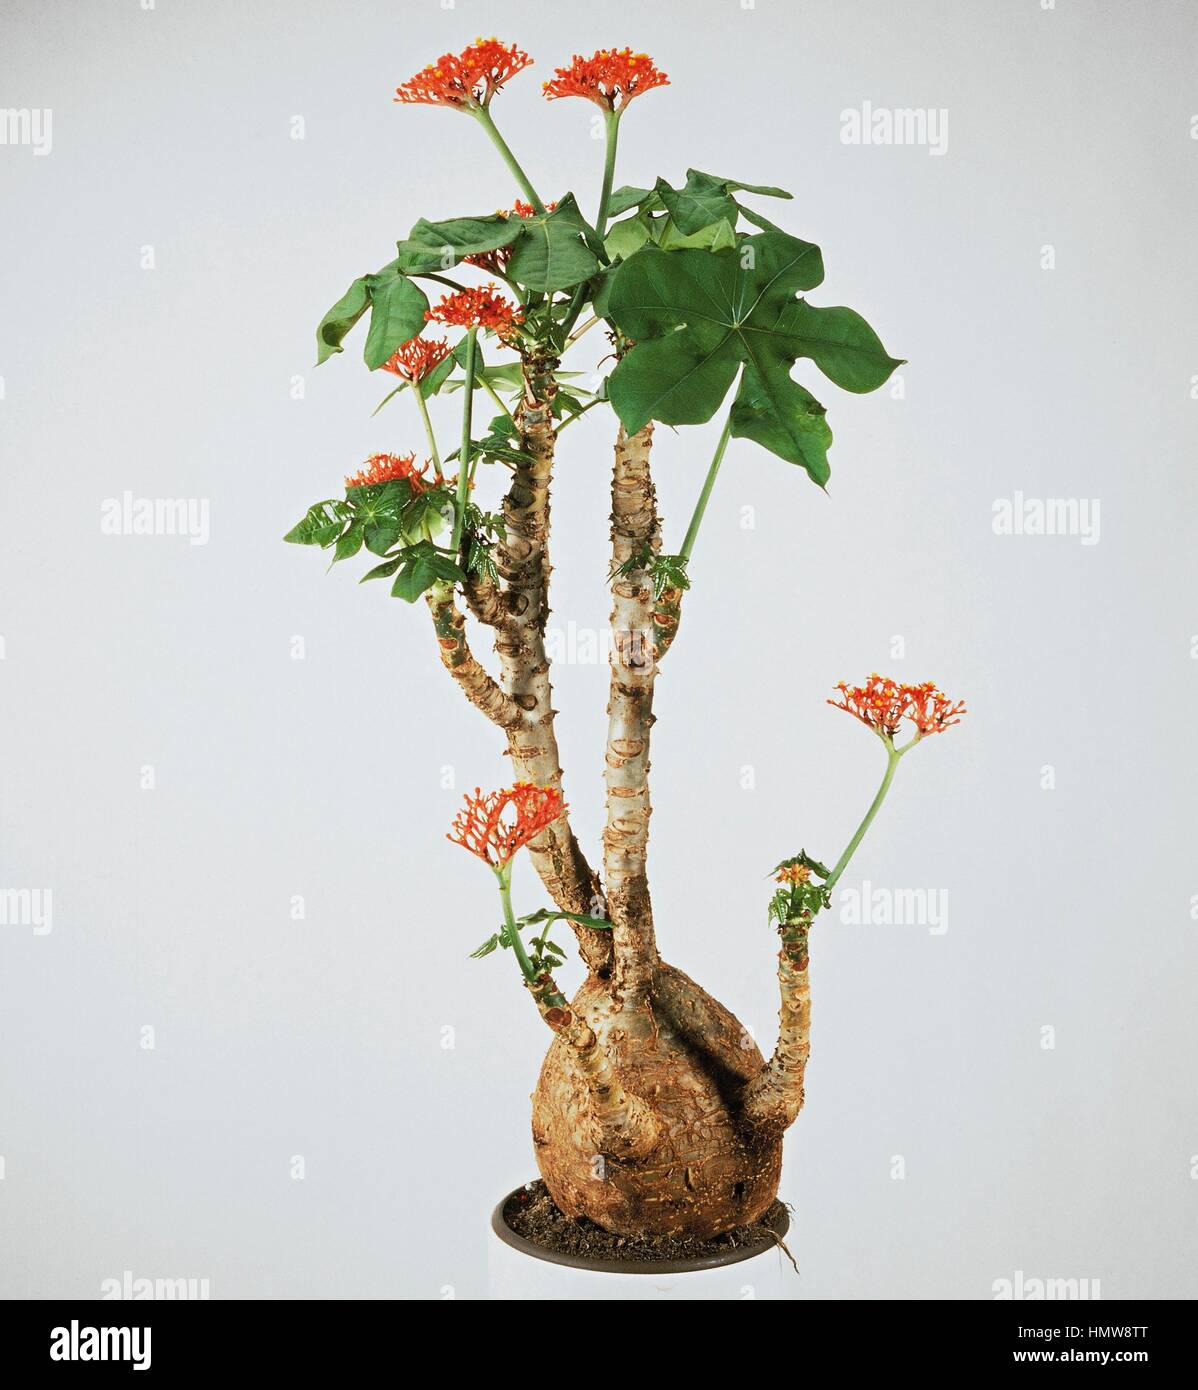 Bhudda belly plant, Bottleplant shrub or Gout (Jatropha Euphorbiaceae Stock Photo -